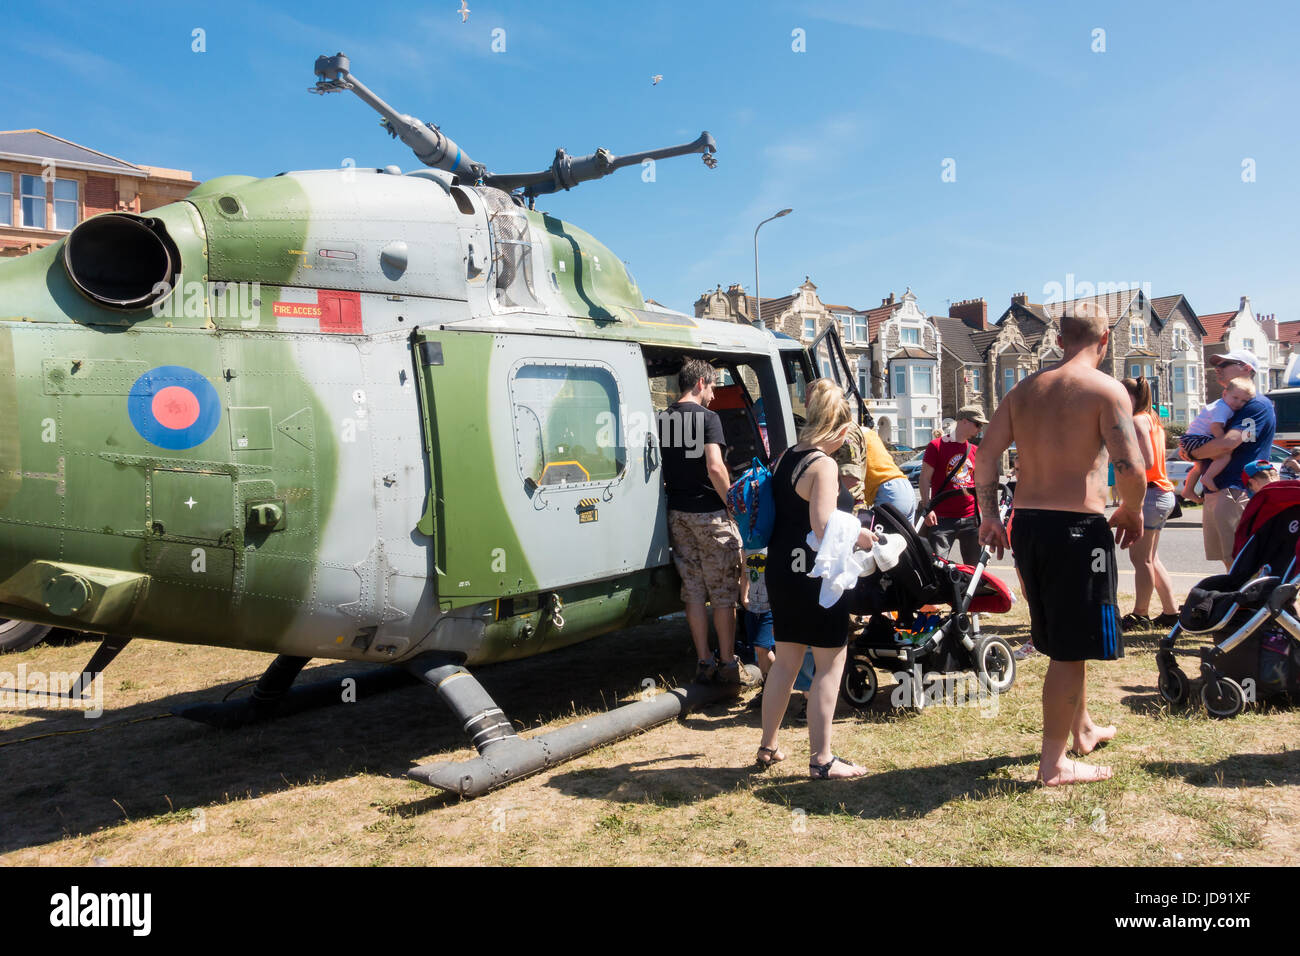 Weston-super-Mare, Vereinigtes Königreich - 17. Juni 2017: Menschen stehen Schlange, um einen Blick ins Innere der Hubschrauber an die Öffentlichkeit und kostenfreies Airshow in Weston- Stockfoto